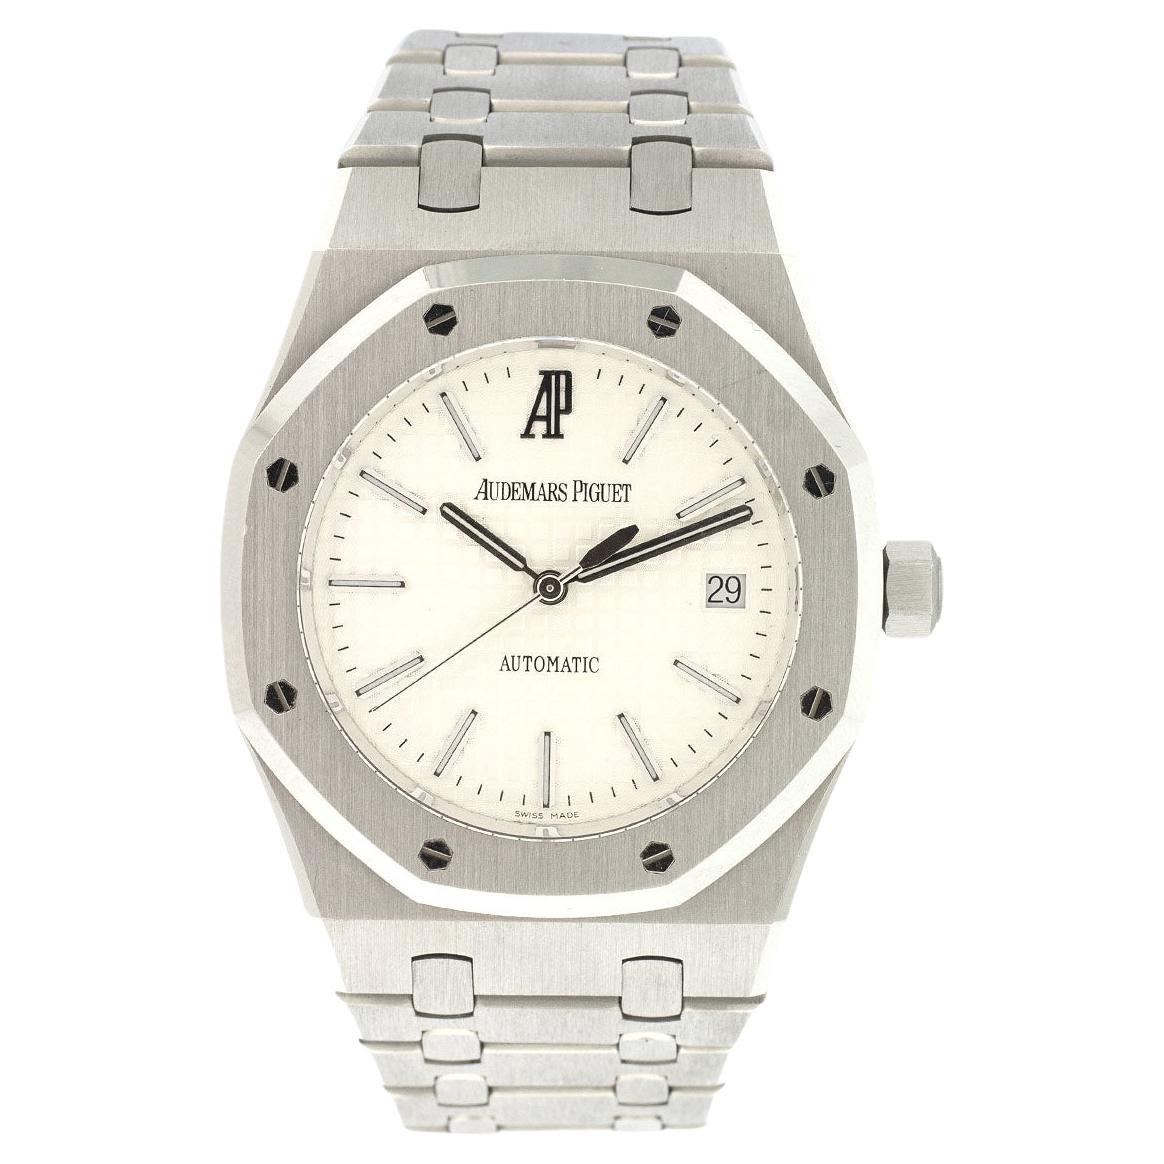 Audemars Piguet 15300 Royal Oak White Dial Watch For Sale